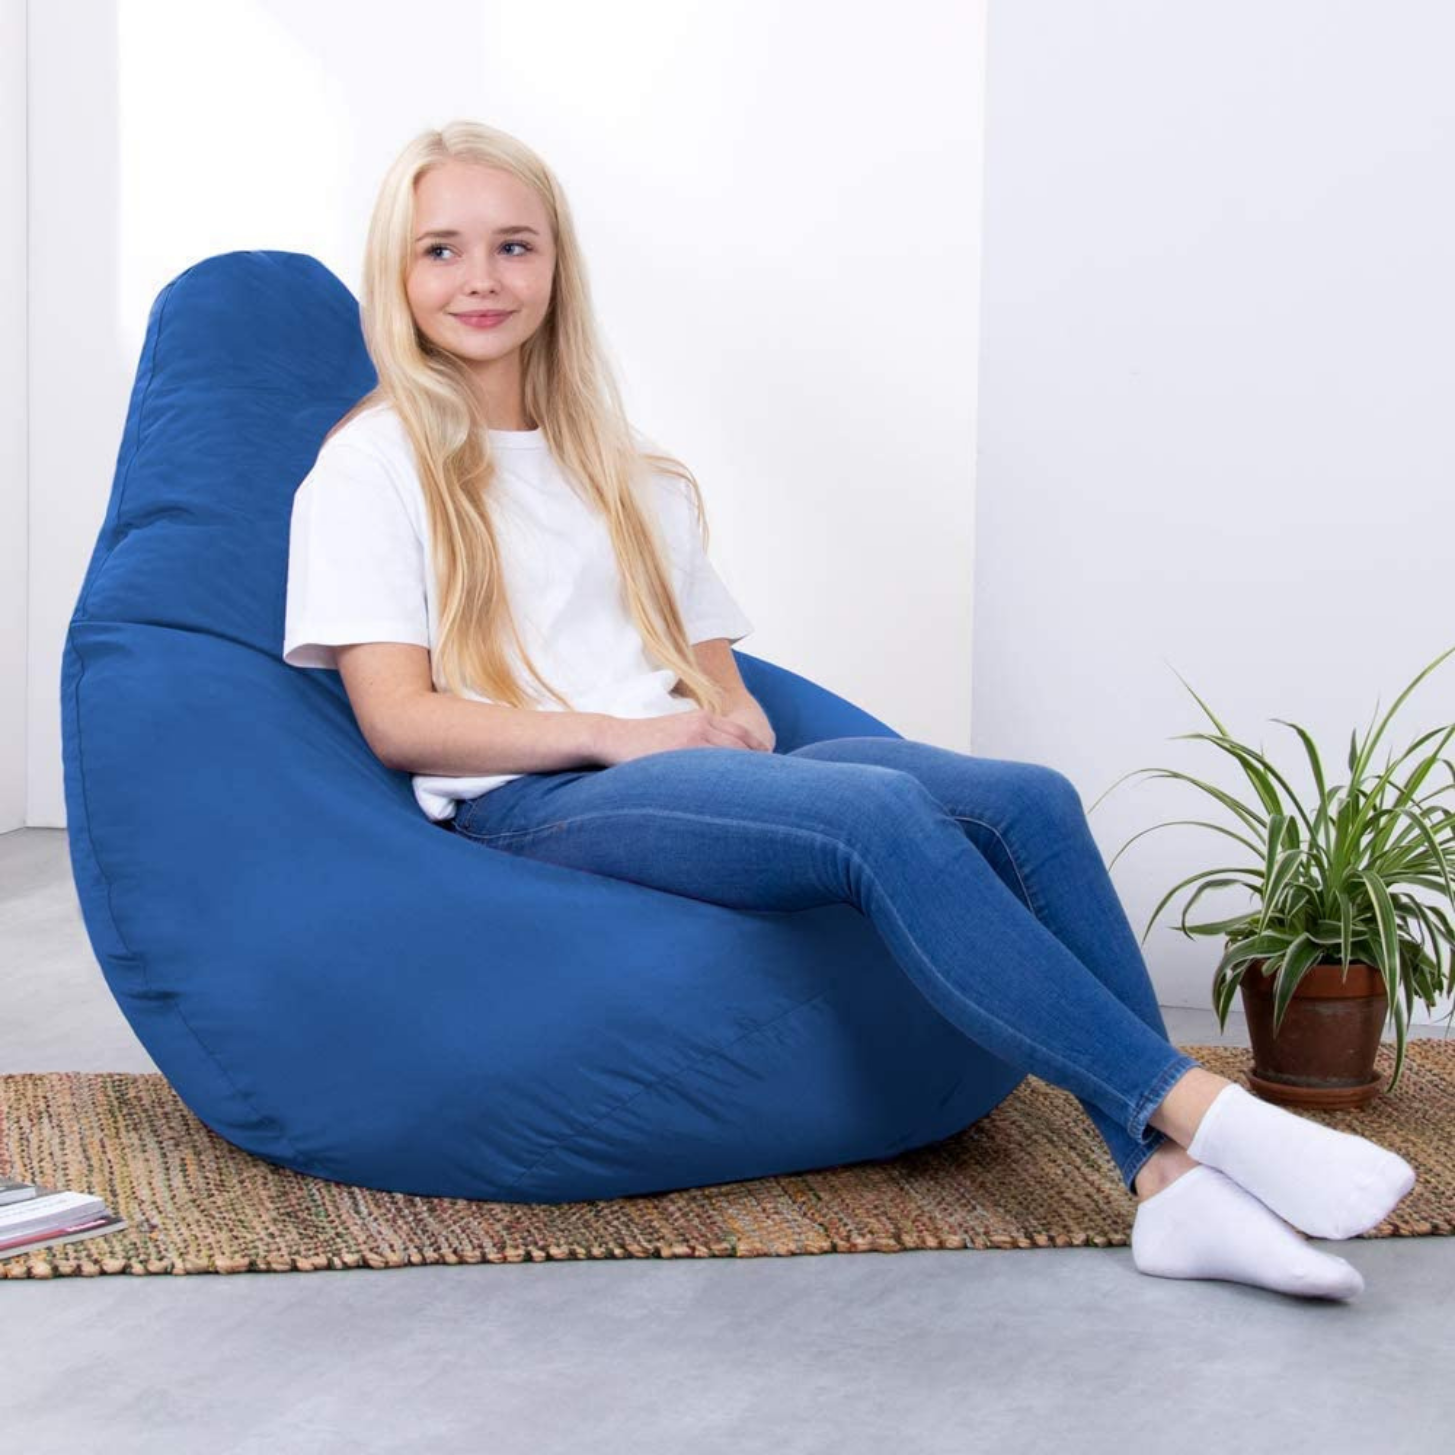 Sensorii's Furniture- girl sat in Sensorii's blue bean bag chair